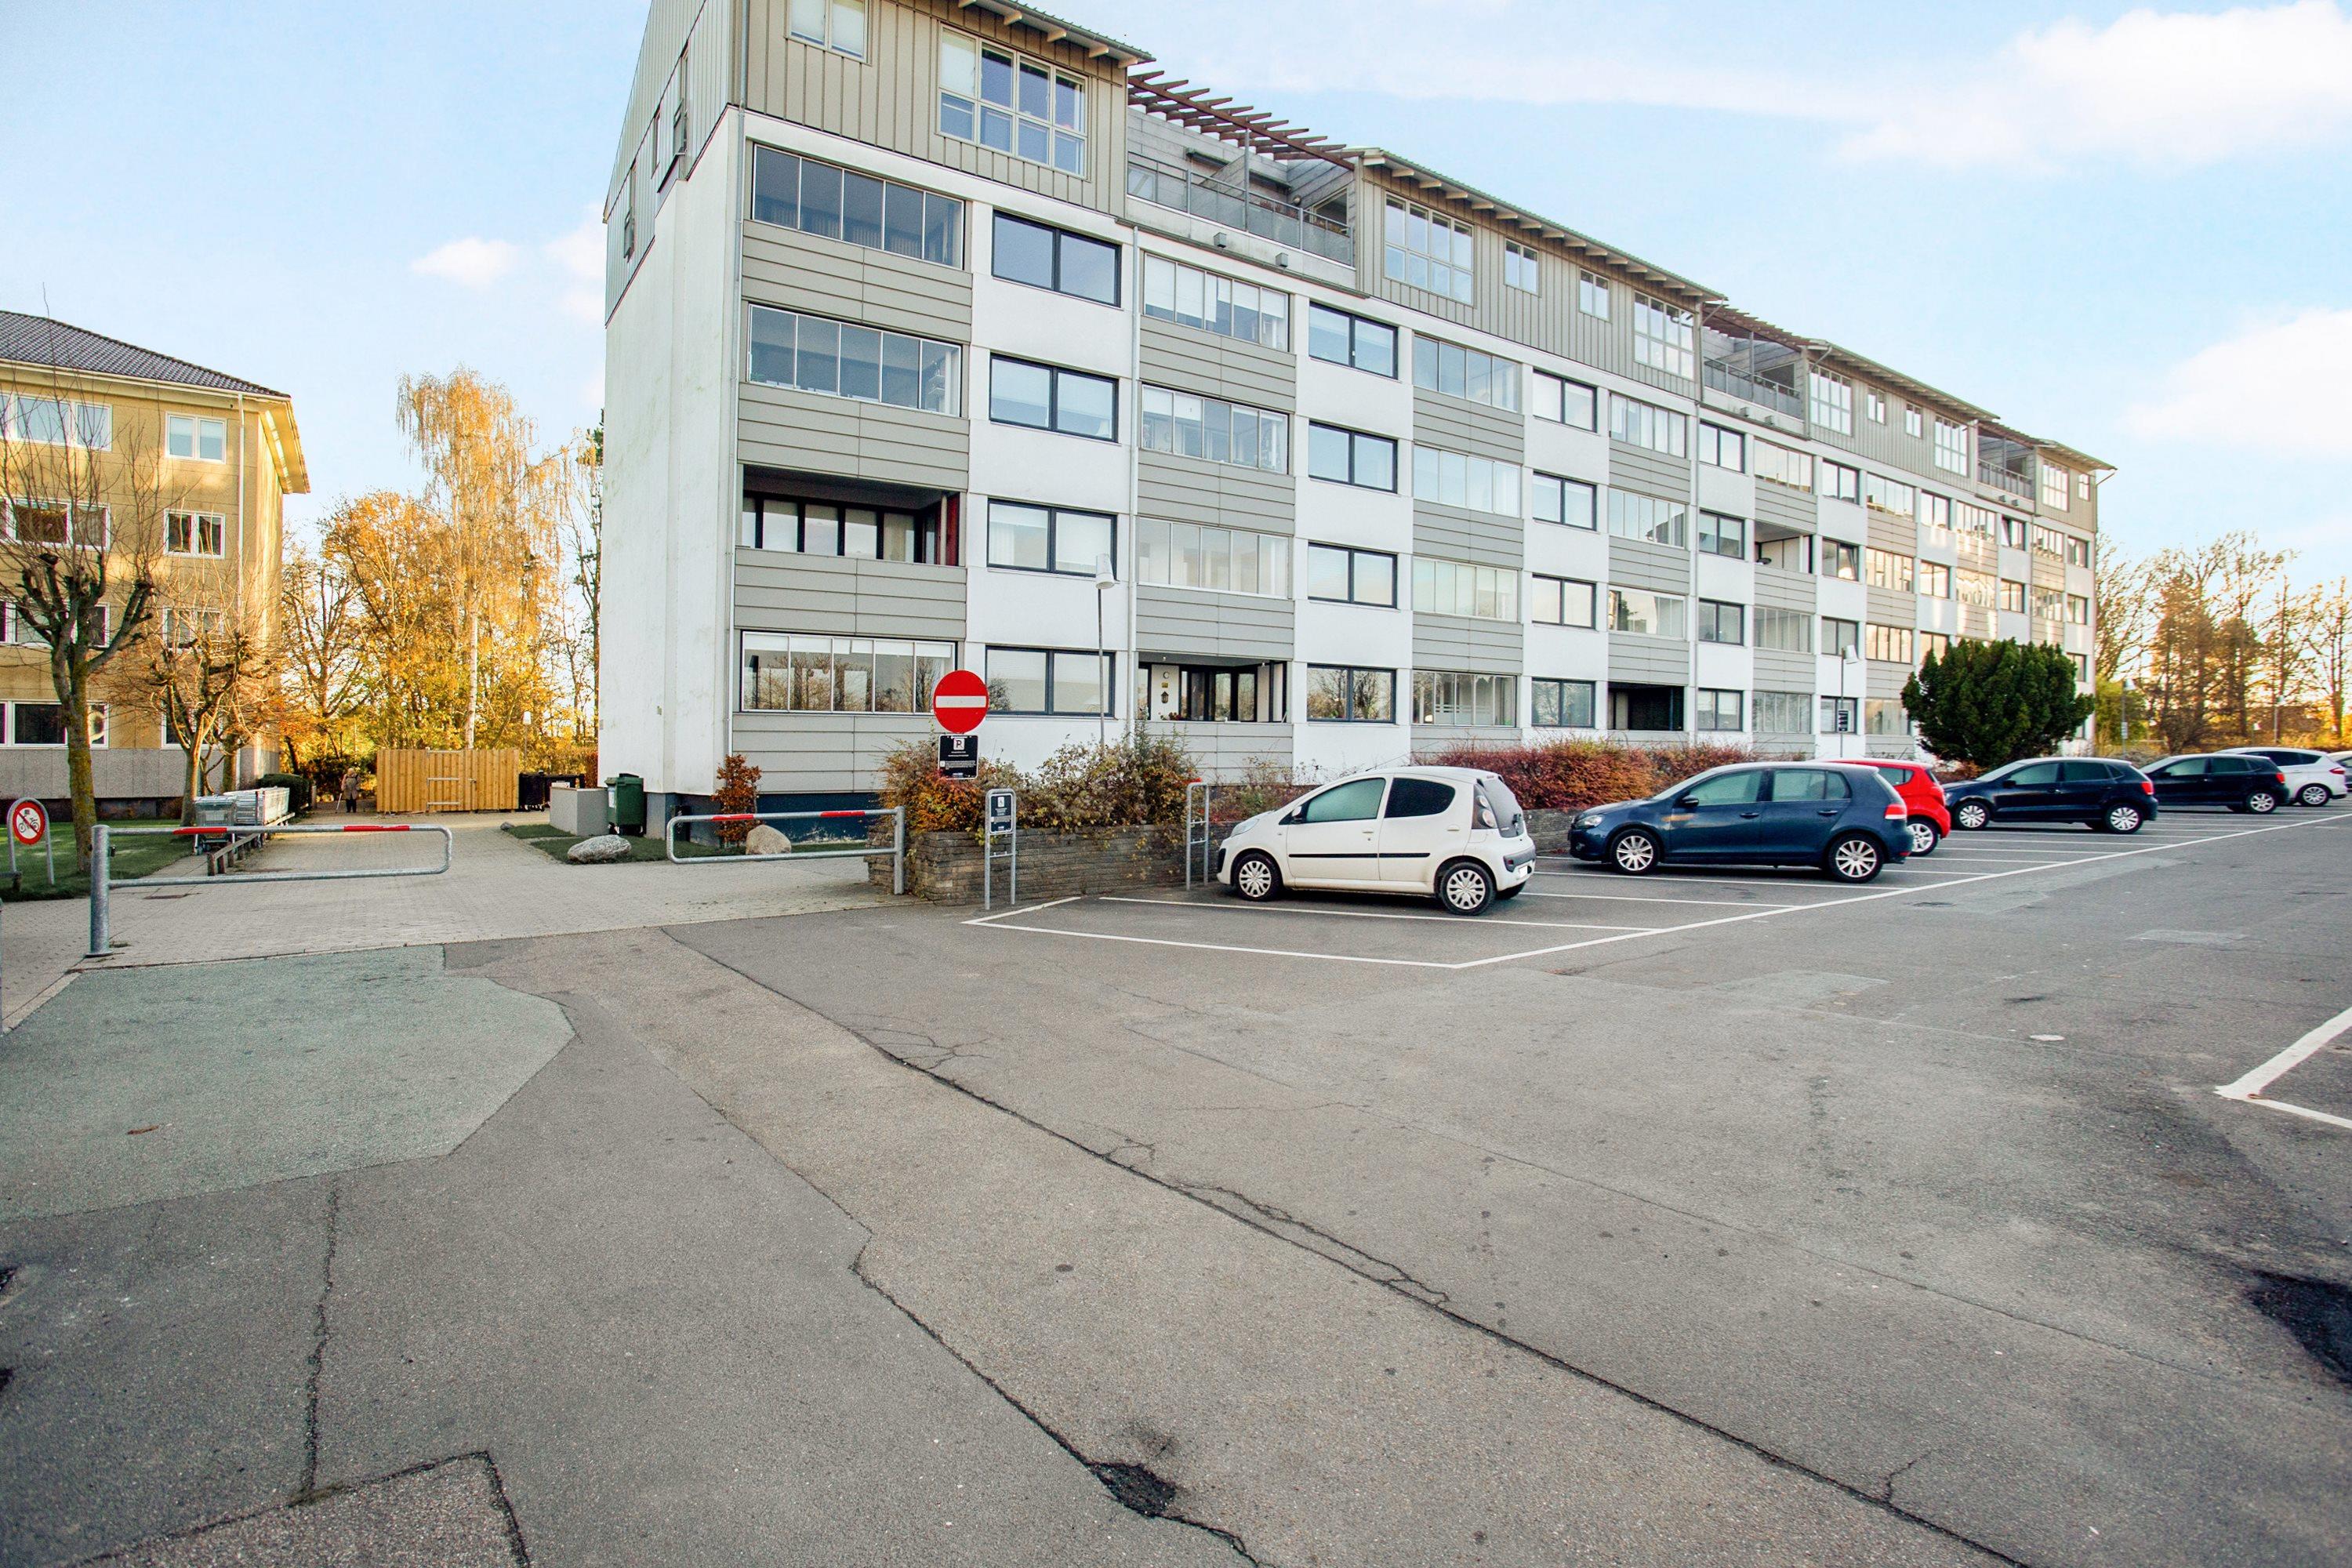 Lejlighed - 2680 Solrød - Egeparken 31C, 1. mf.